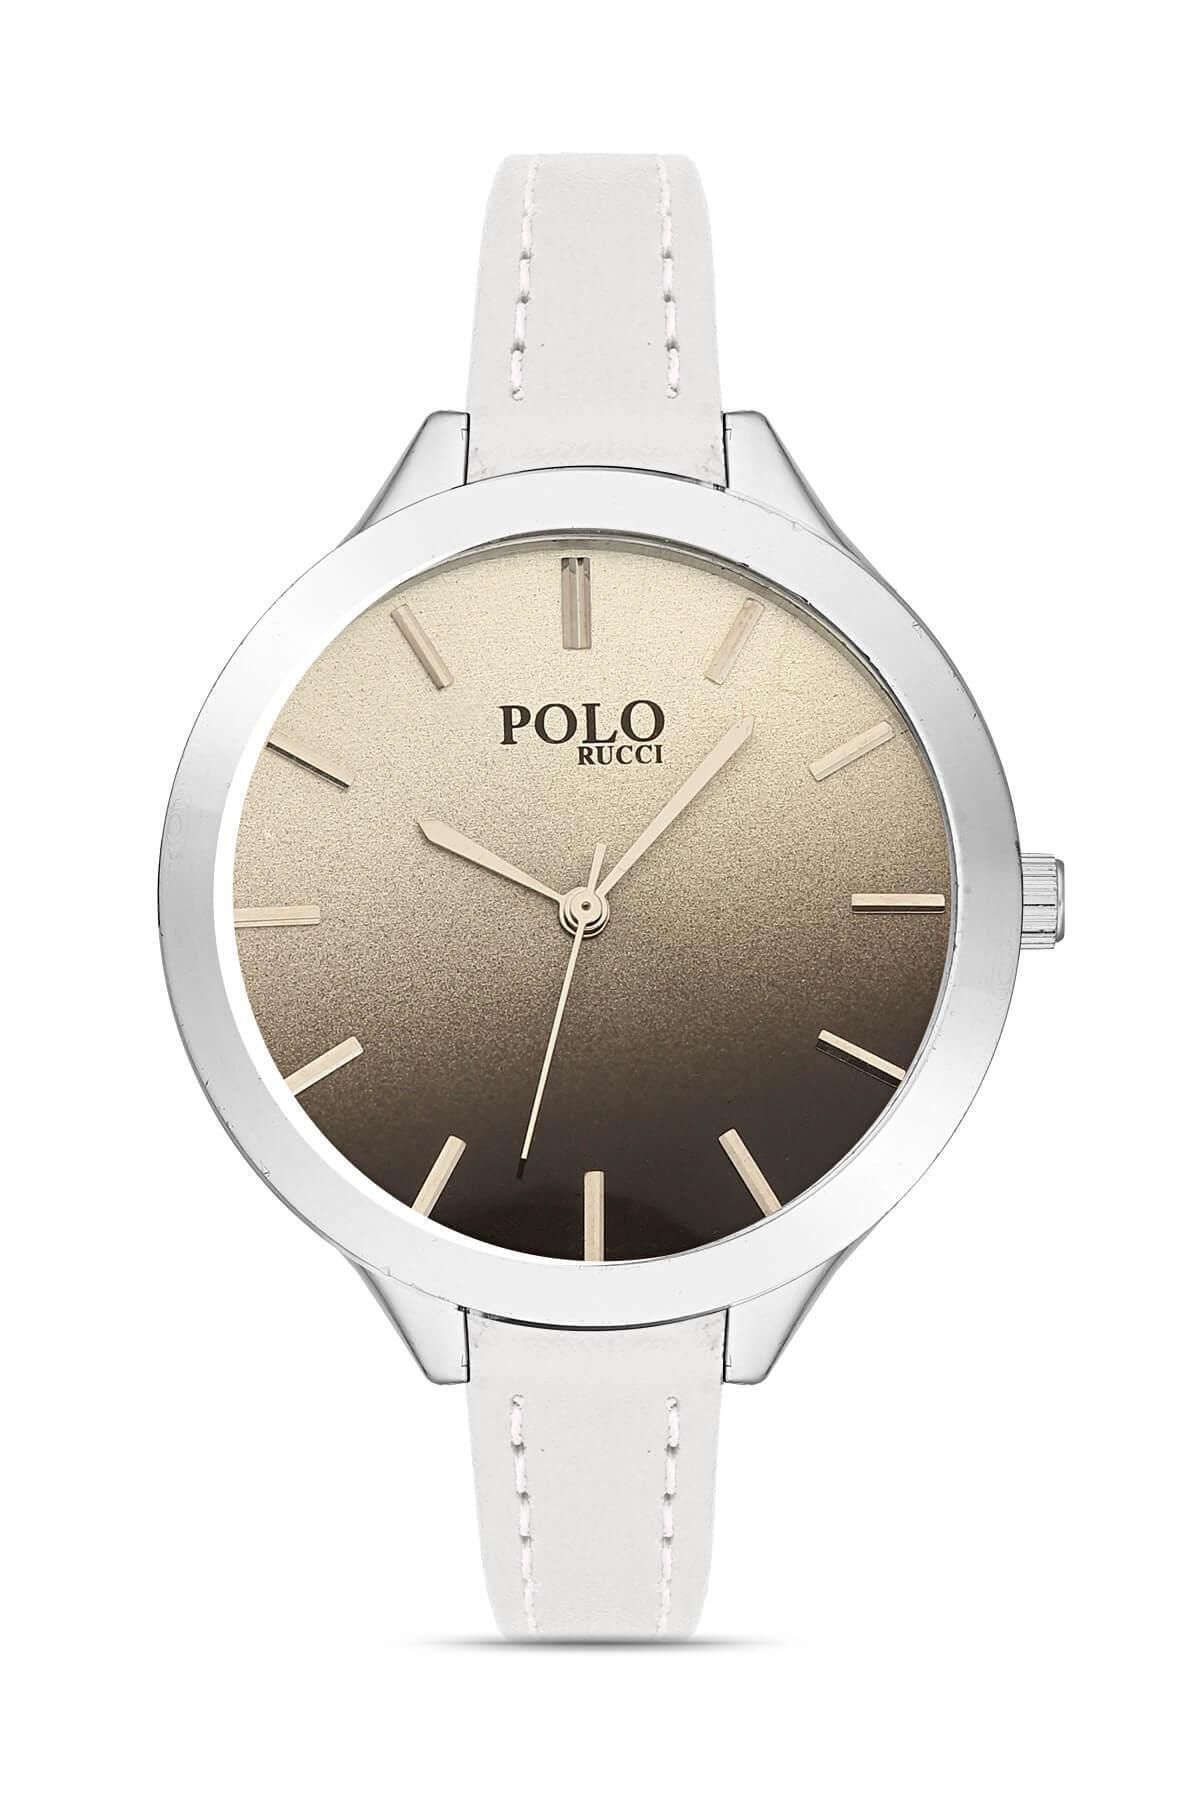 POLO Rucci 2066 Kayışlı Kadın Kol Saati